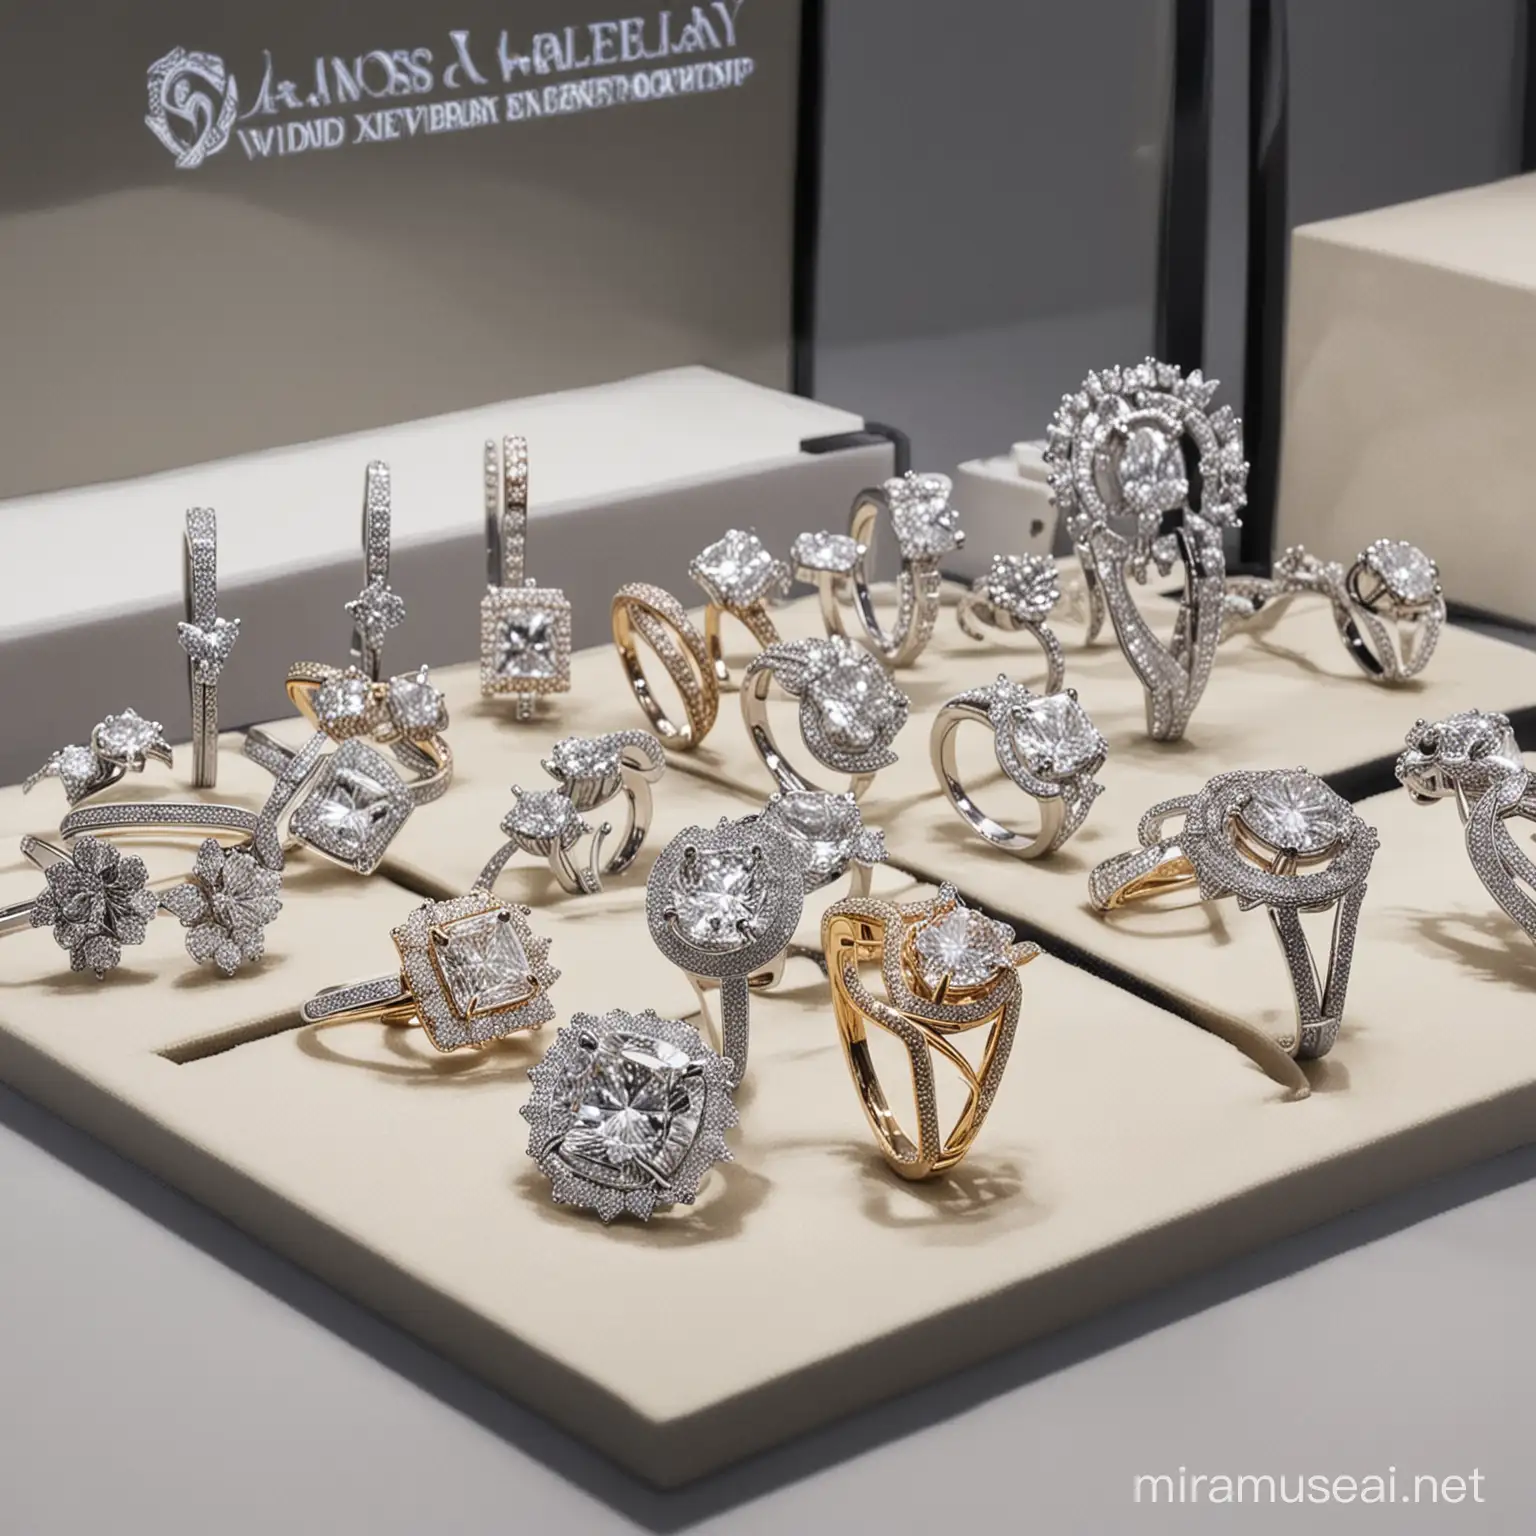 Diamond jewellry exhibition indoor